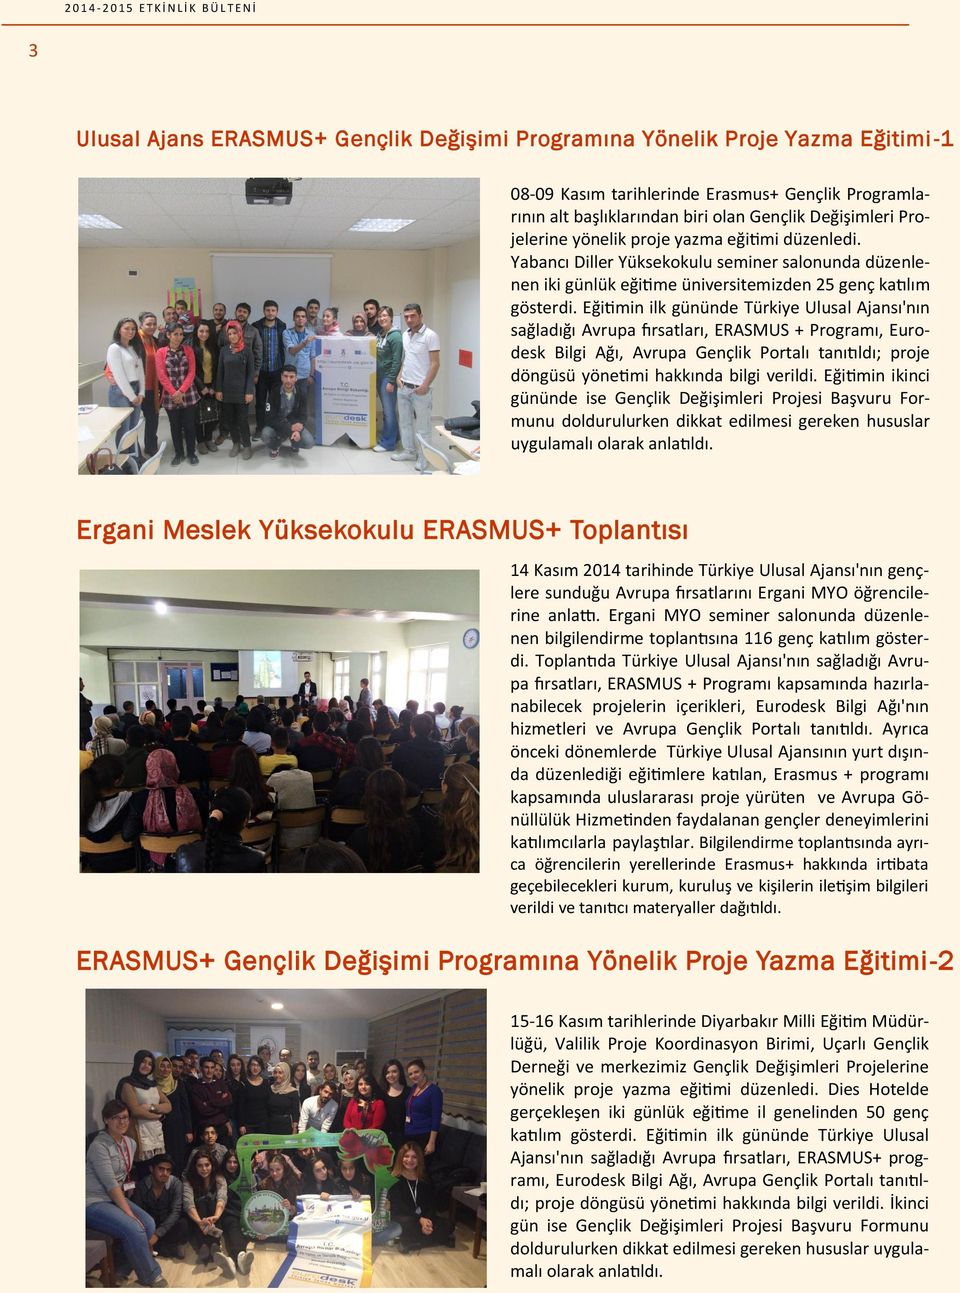 Eğitimin ilk gününde Türkiye Ulusal Ajansı'nın sağladığı Avrupa fırsatları, ERASMUS + Programı, Eurodesk Bilgi Ağı, Avrupa Gençlik Portalı tanıtıldı; proje döngüsü yönetimi hakkında bilgi verildi.